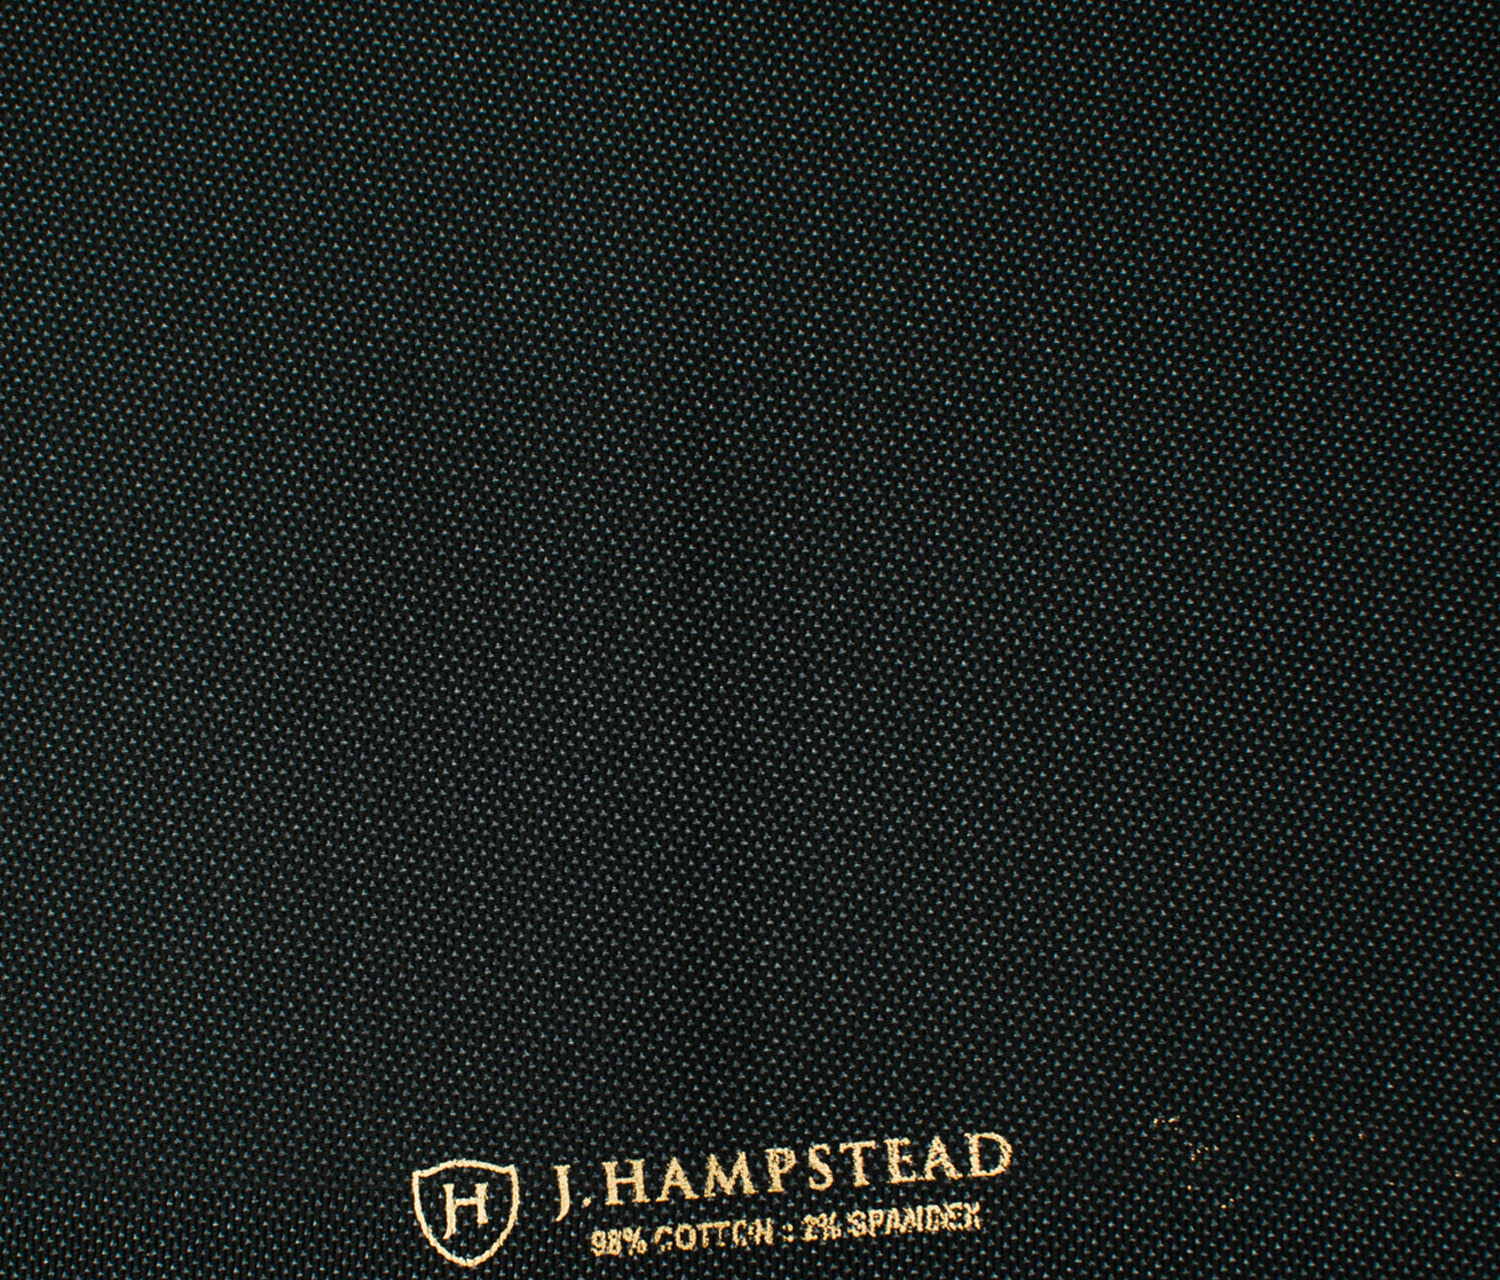 J.Hampstead Men's Cotton Structured  Unstitched Trouser Fabric (Black)